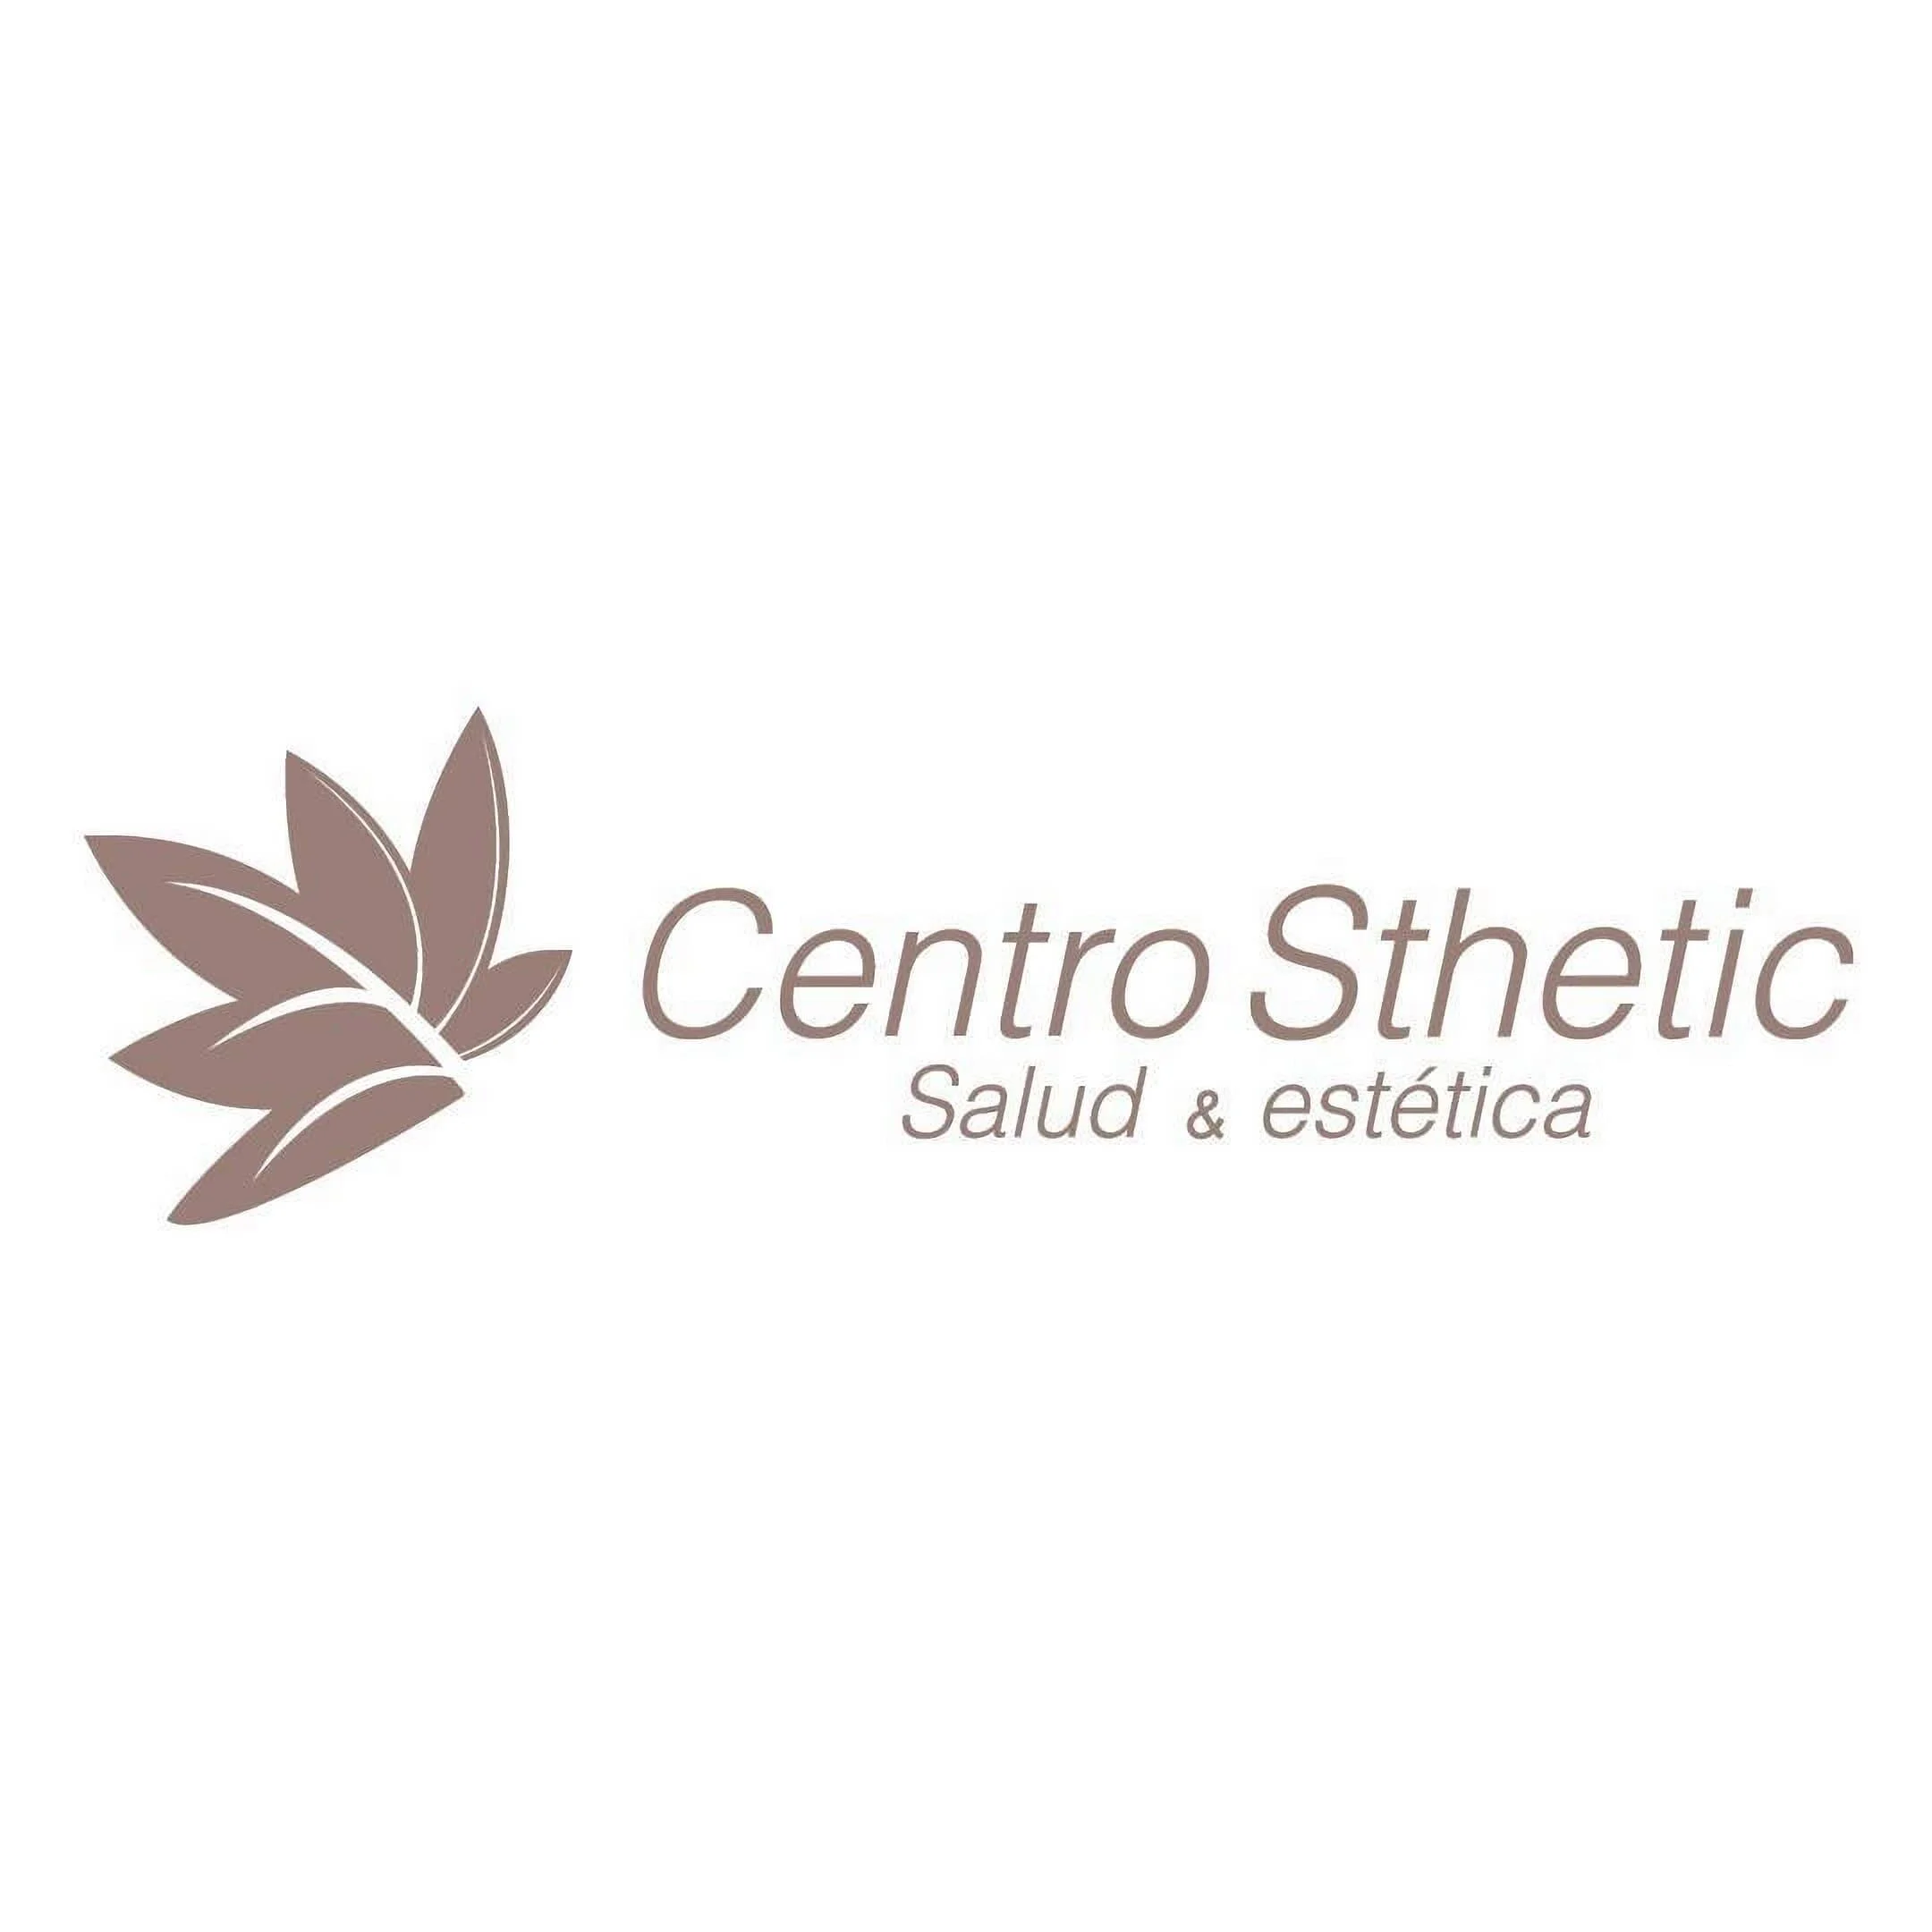 Centro Estetico-centrosthetic-5315